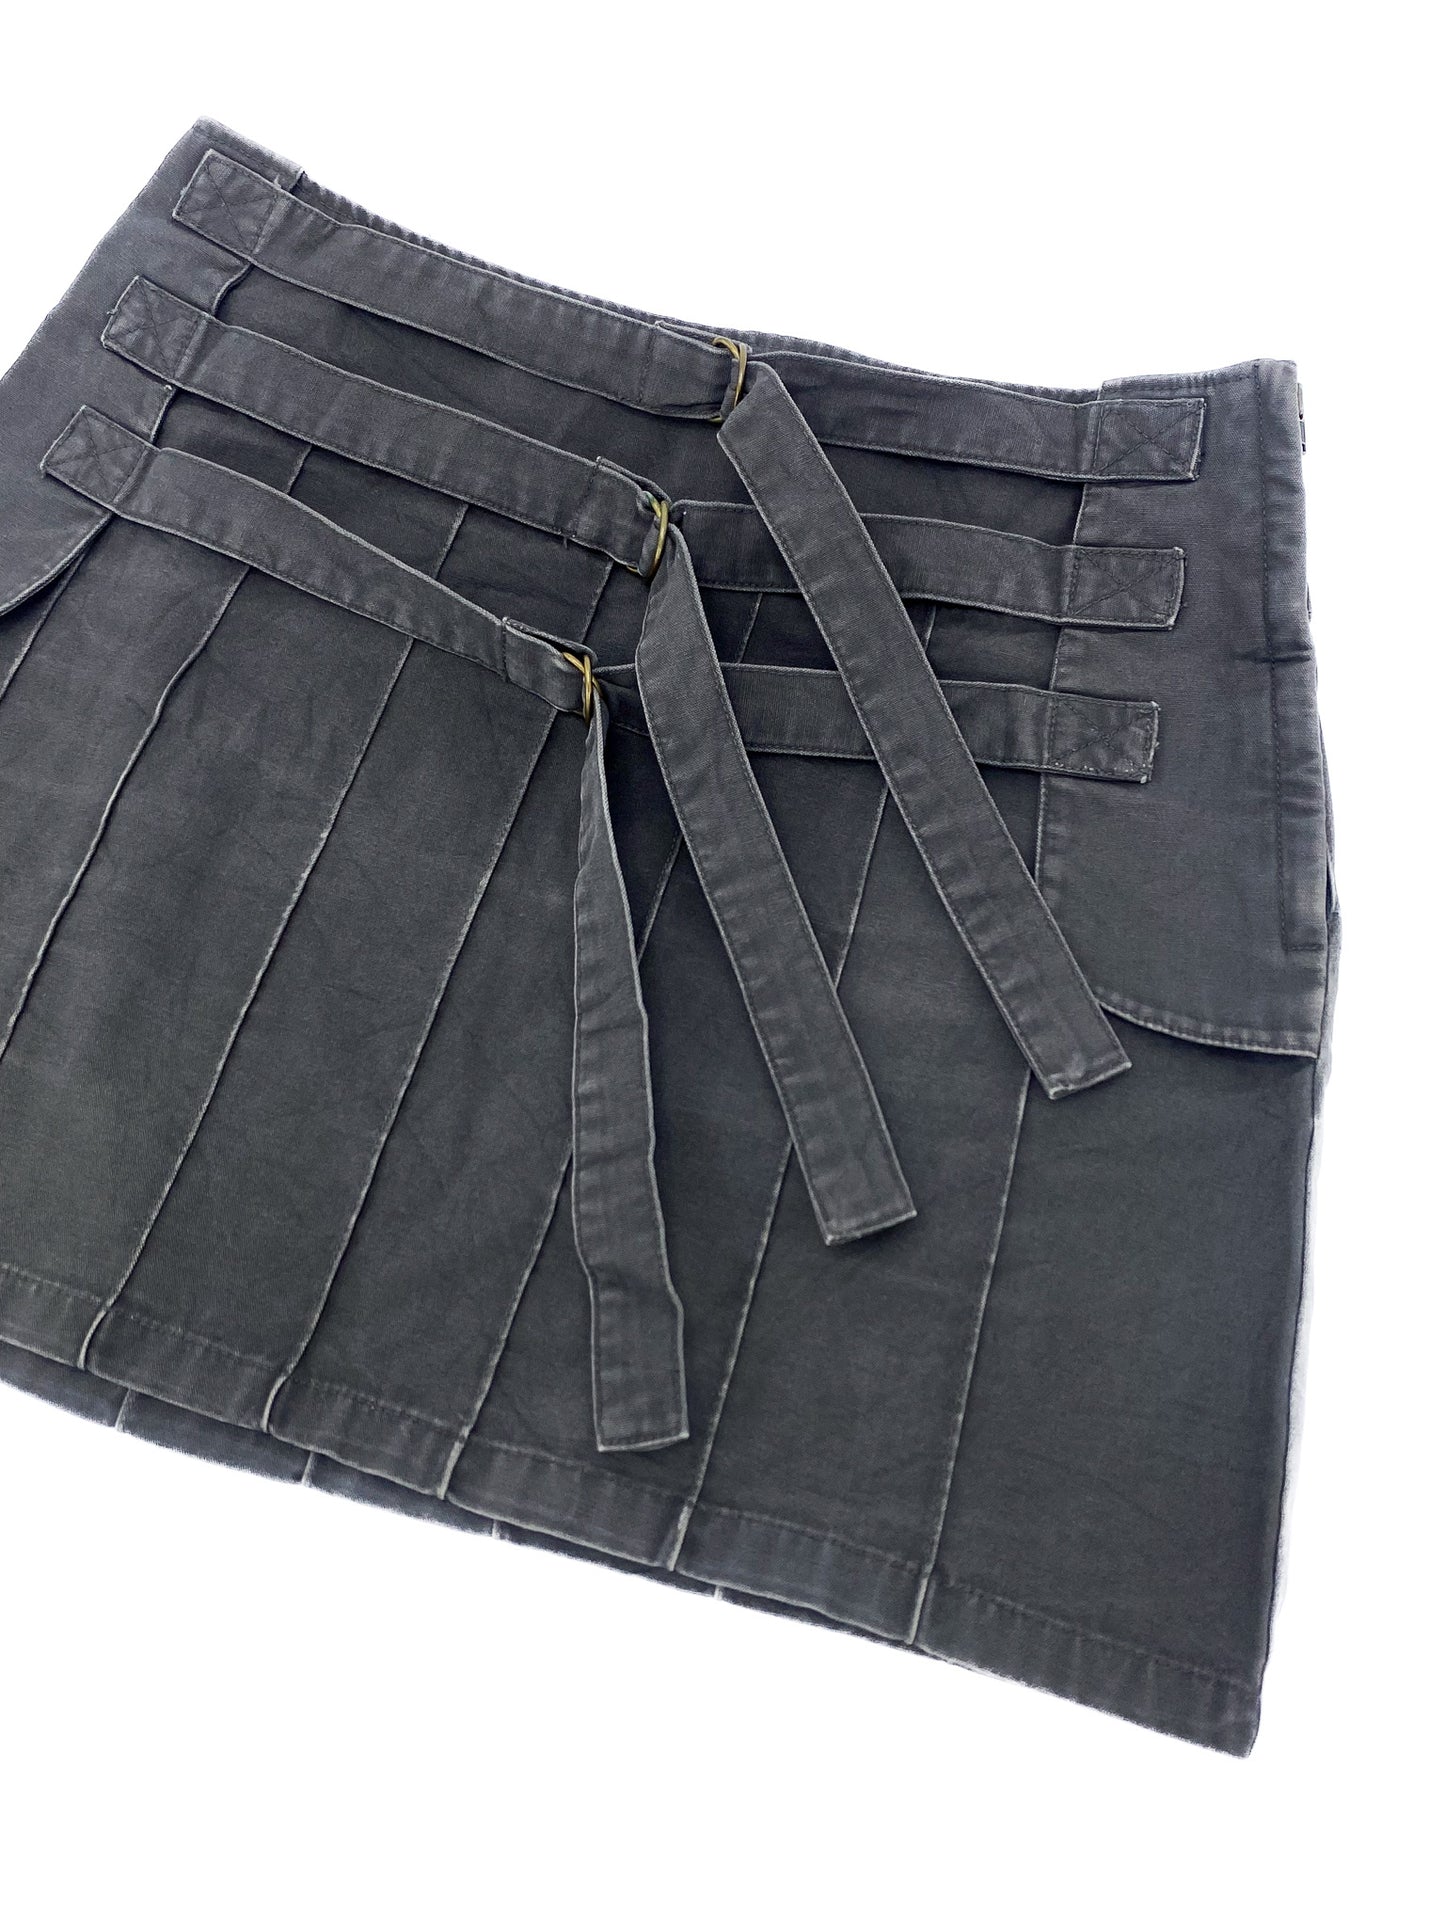 Vintage Multi-Belted Skirt - M